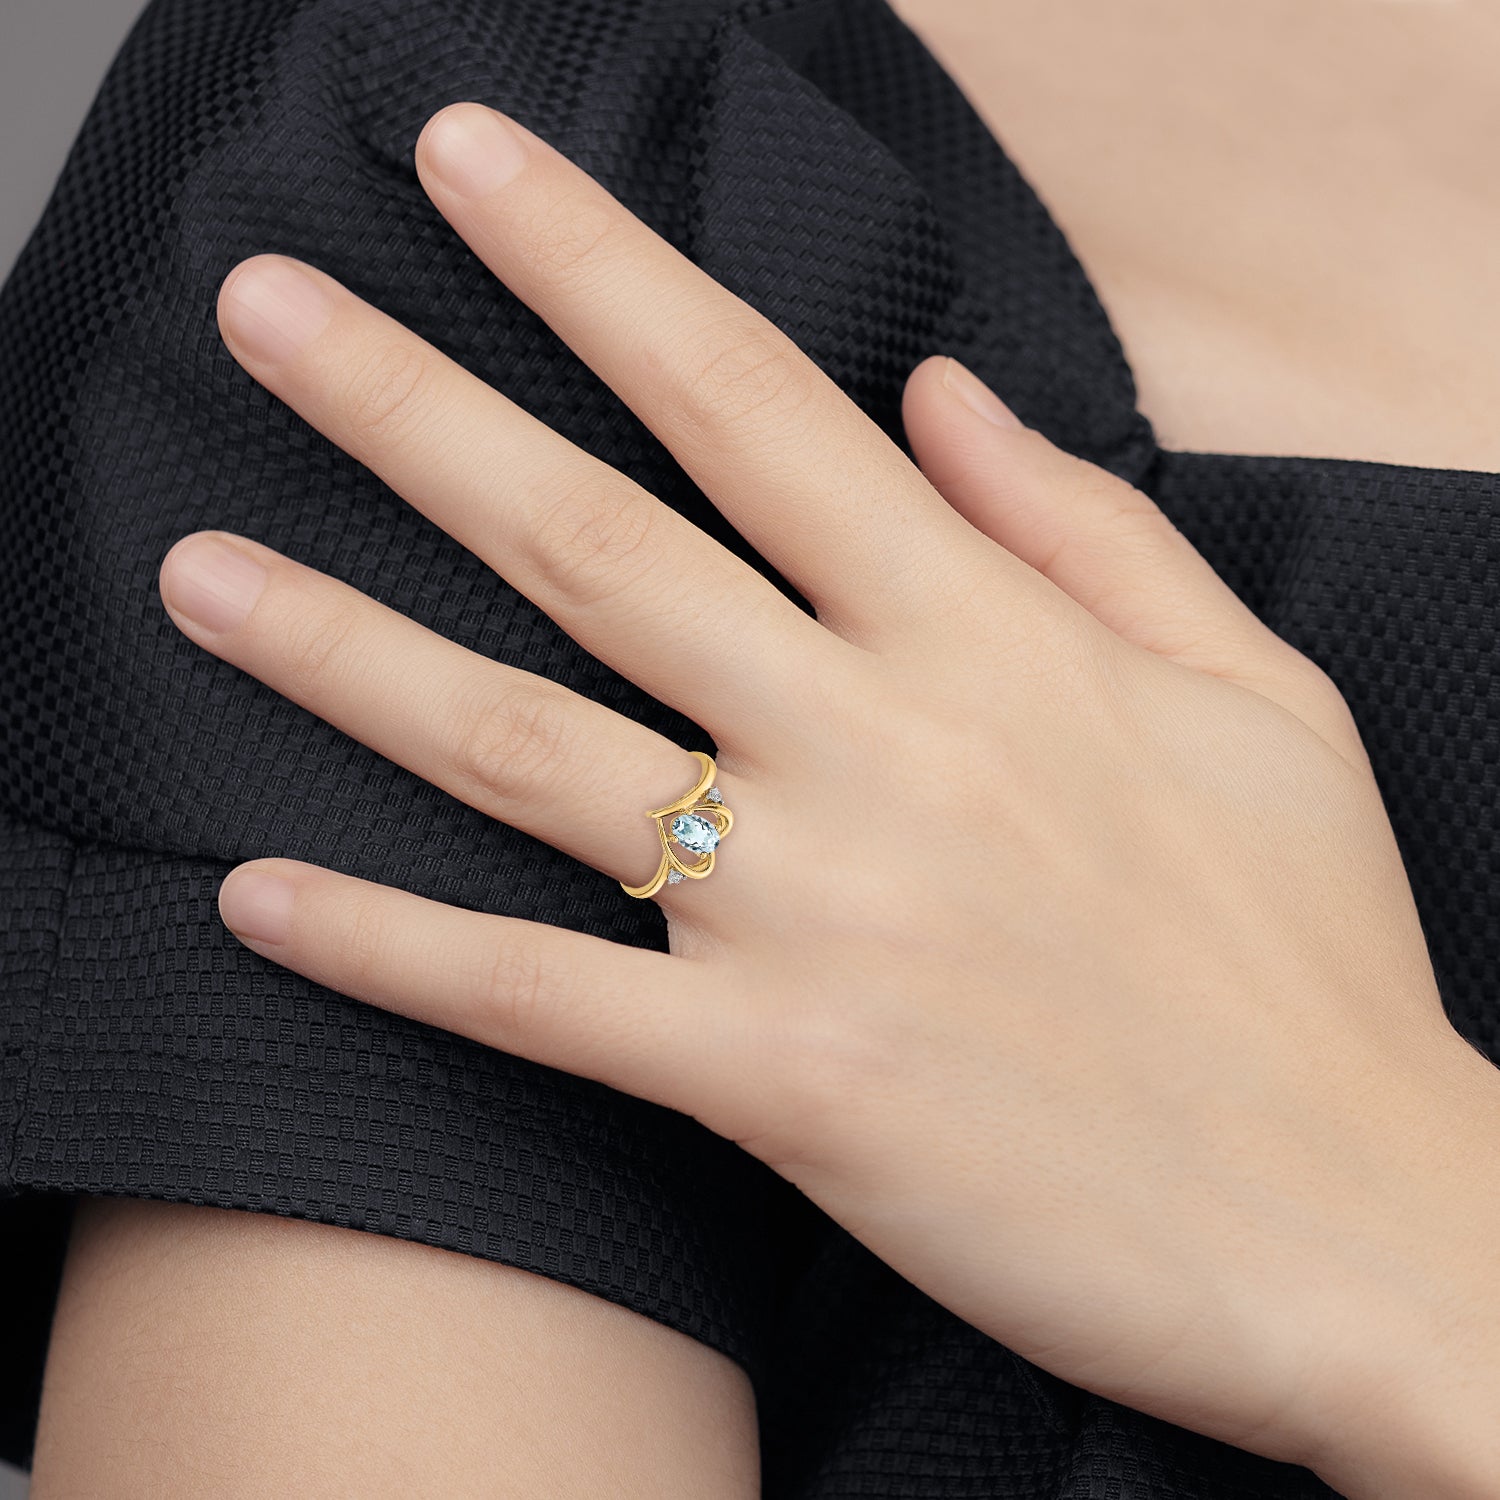 14k Aquamarine and Diamond Heart Ring